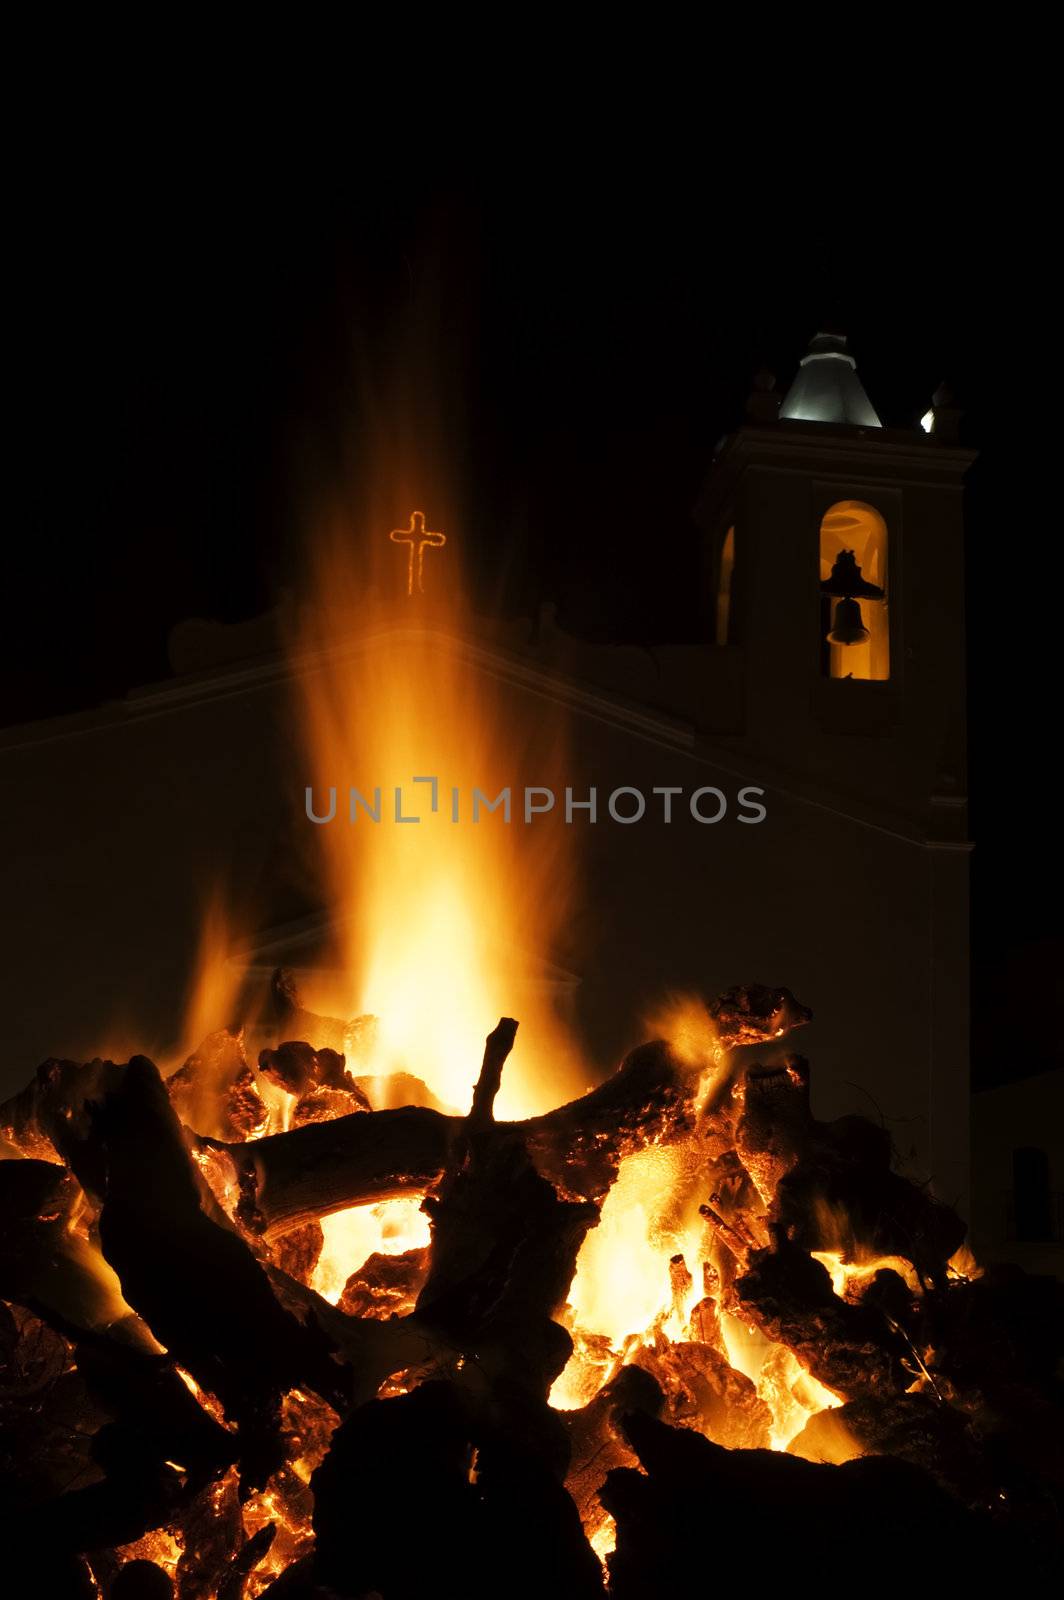 Big festive fire in a square at a portuguese village